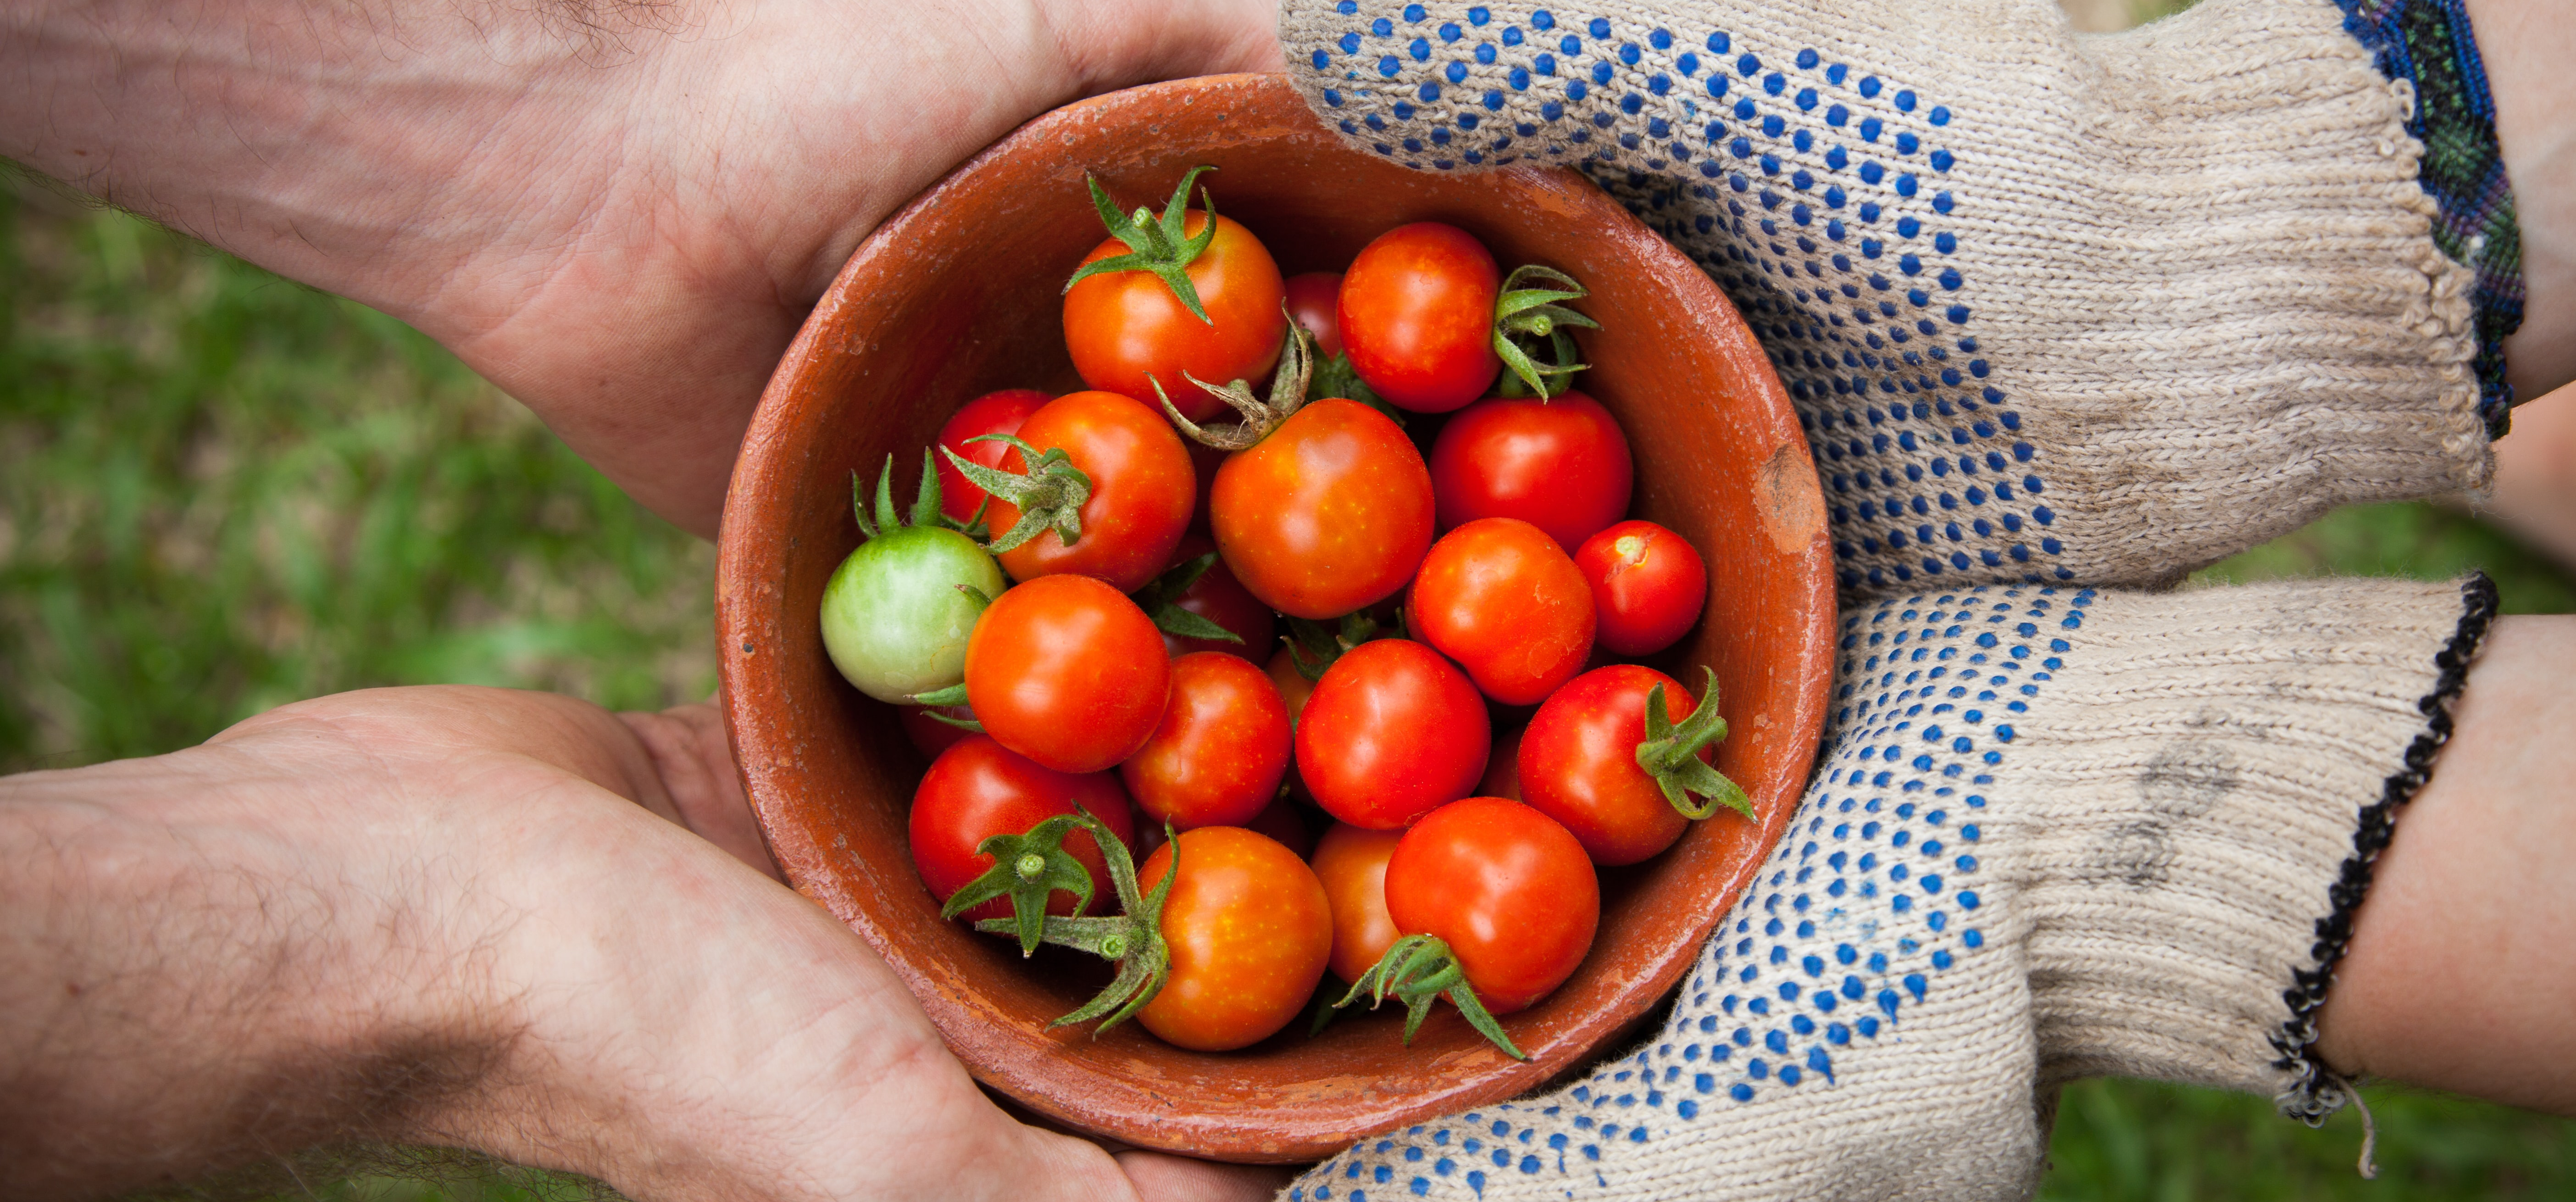 negocio agricola. tomates en negocio agricola